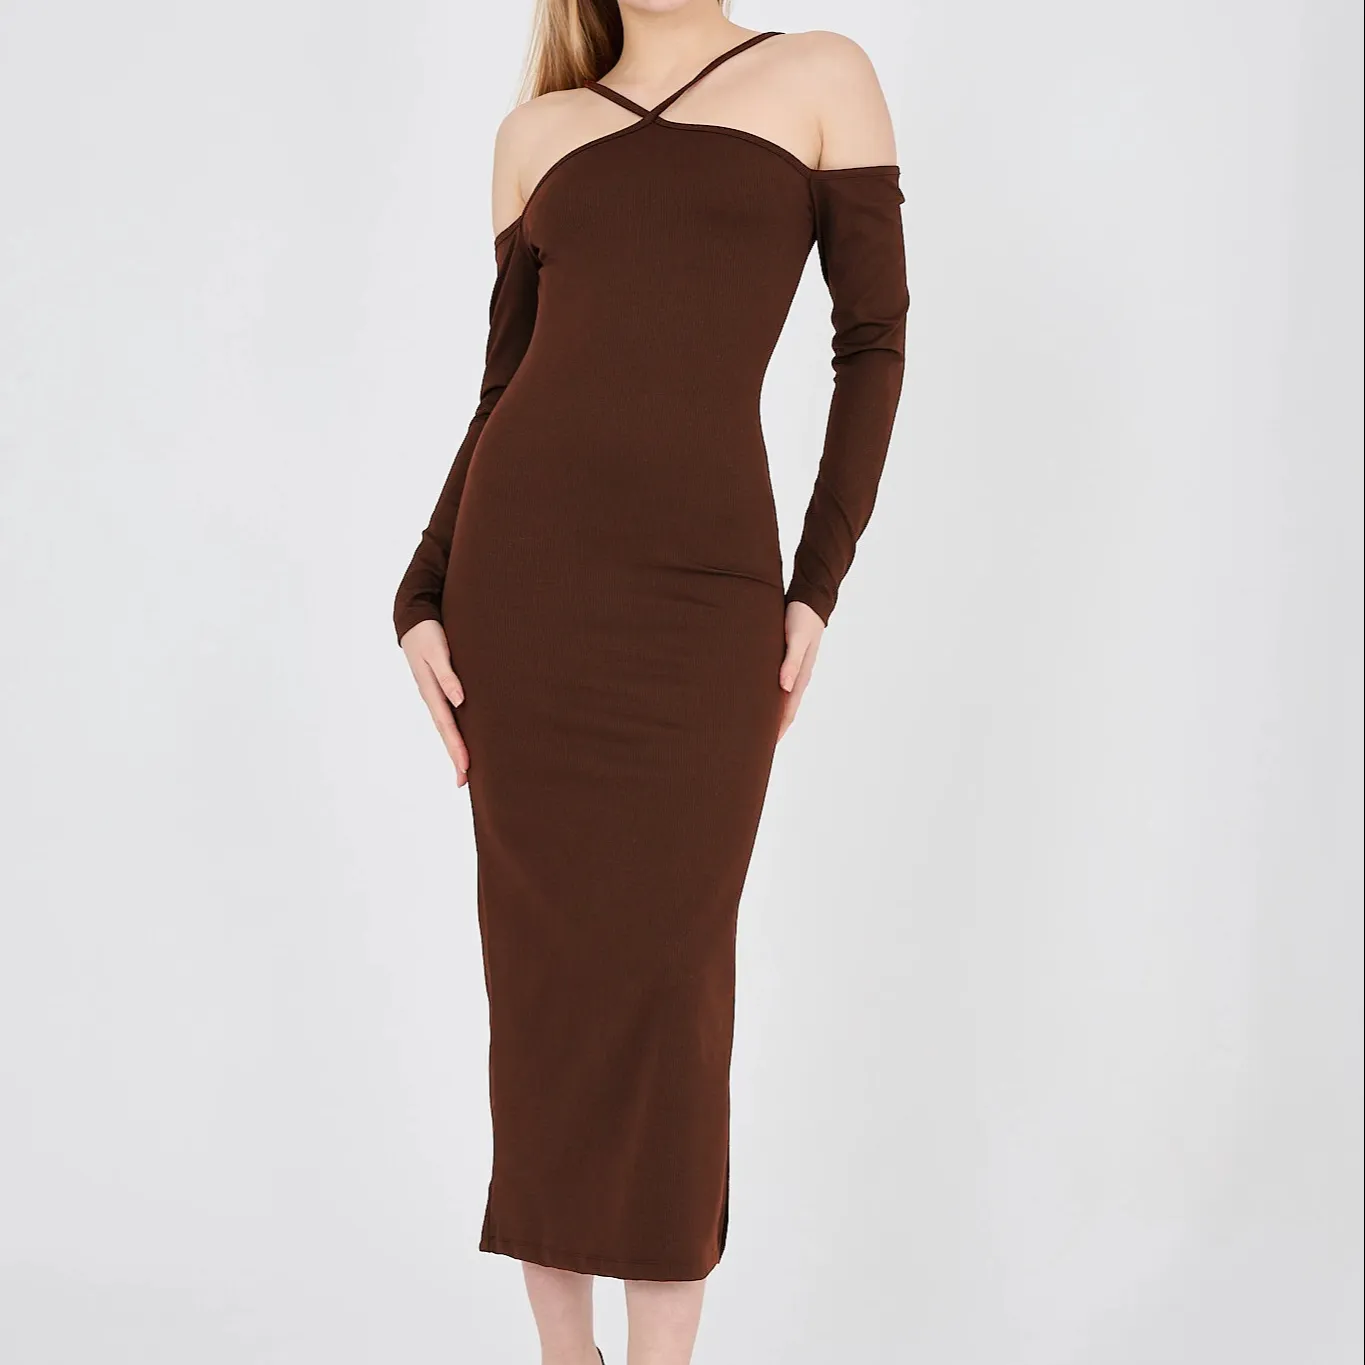 Dress maxi panjang warna coklat wanita, gaun halter lengan rendah panjang warna coklat